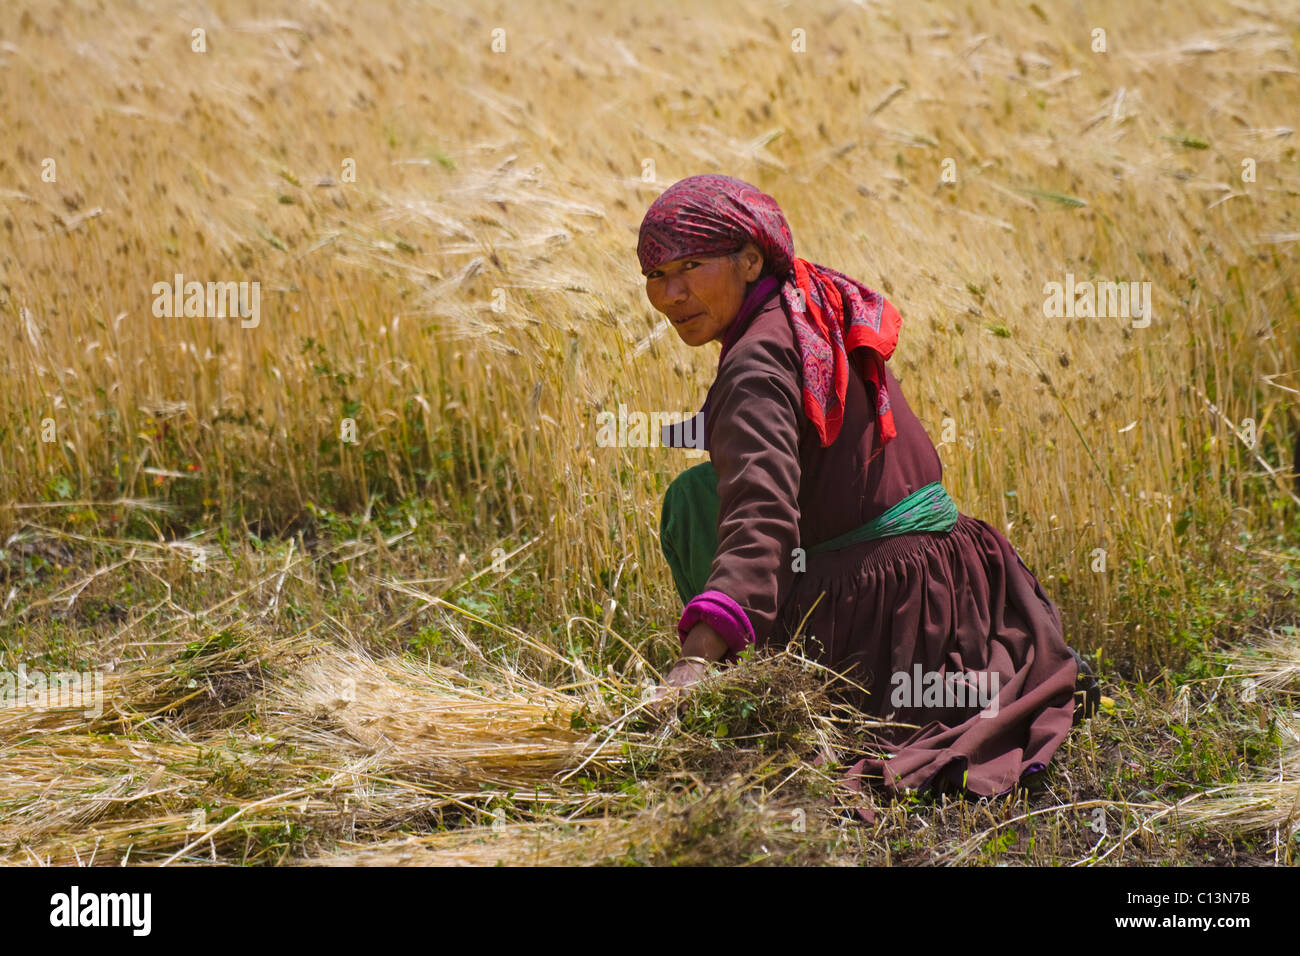 La récolte d'orge, femme Ladakh Leh, Ladakh, Inde Banque D'Images